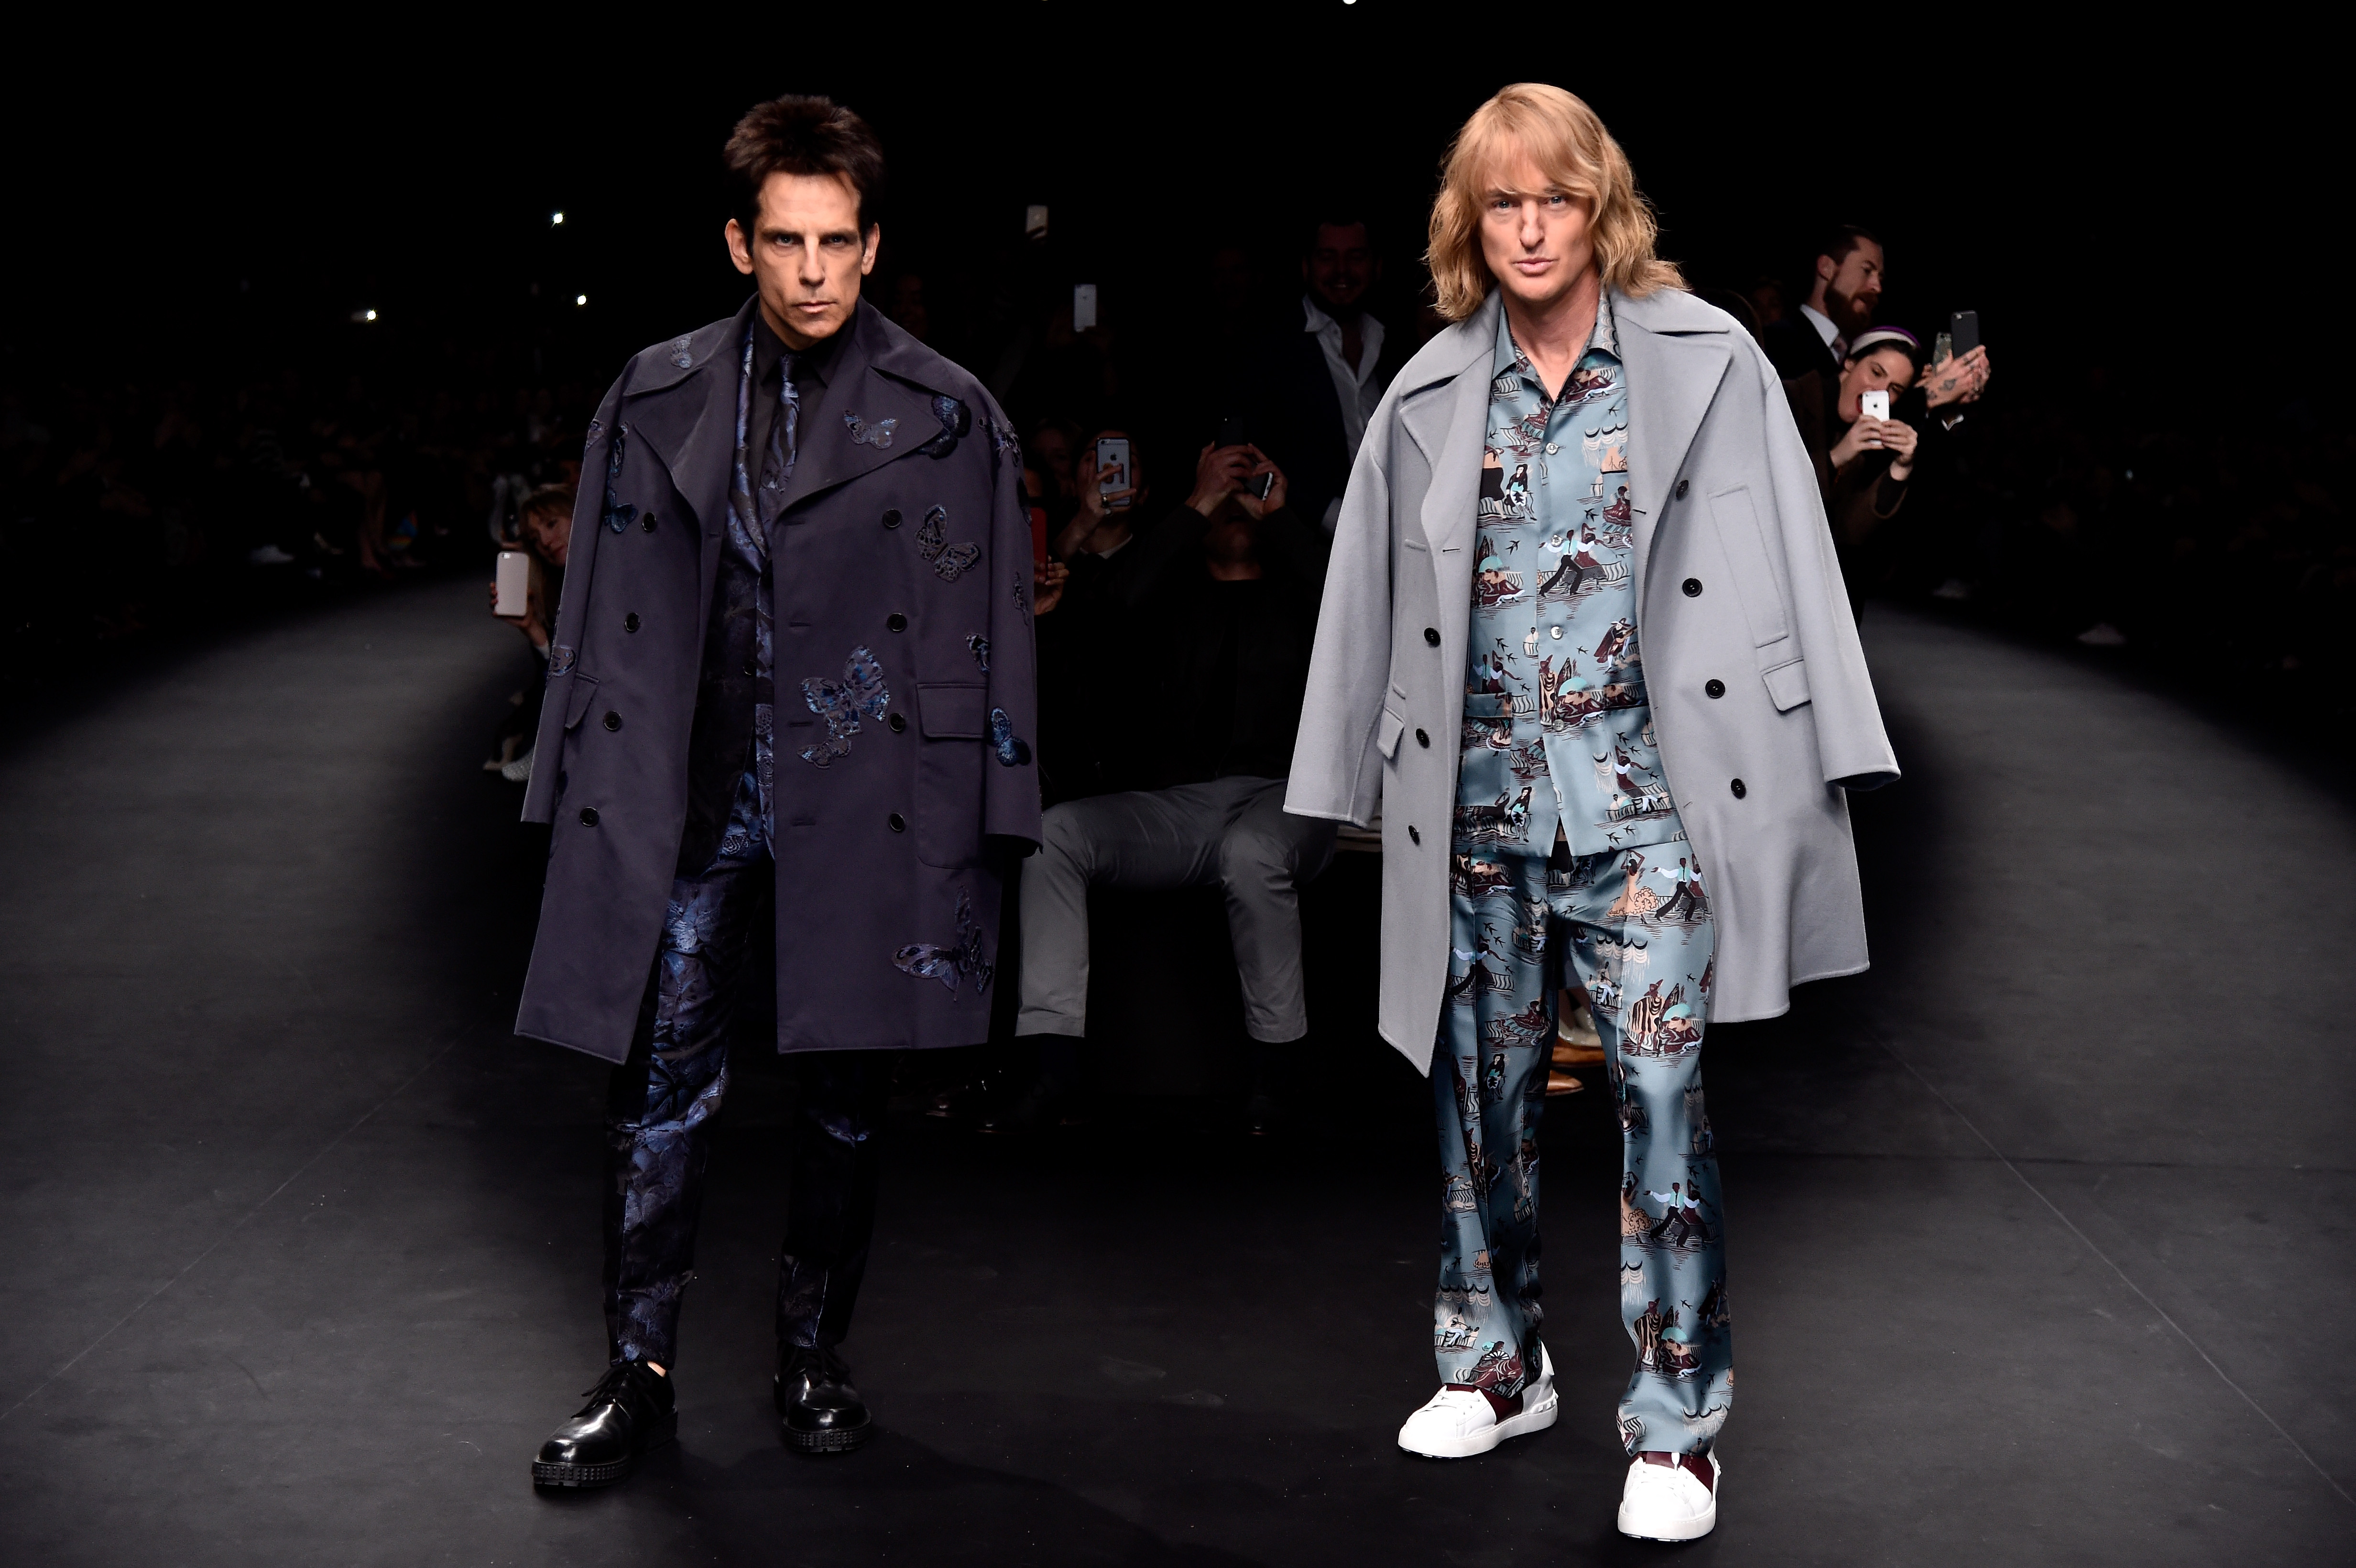 Ben Stiller and Owen Wilson Paris Fashion Week